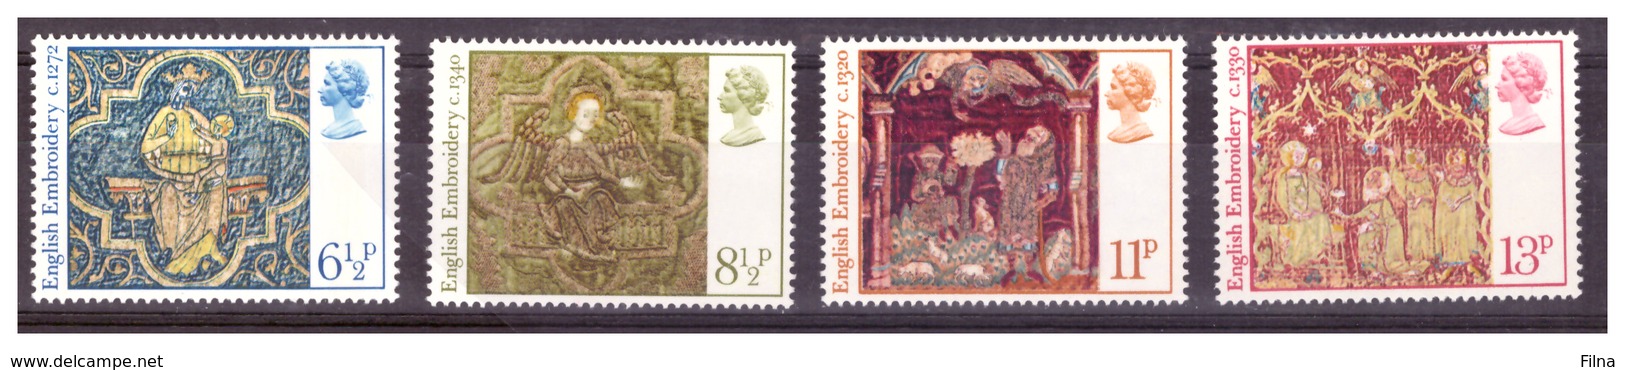 GRAN BRETAGNA - 1976 - NATALE, RICAMI MEDIOEVALI INGLESI. SERIE COMPLETA - MNH** - Unused Stamps